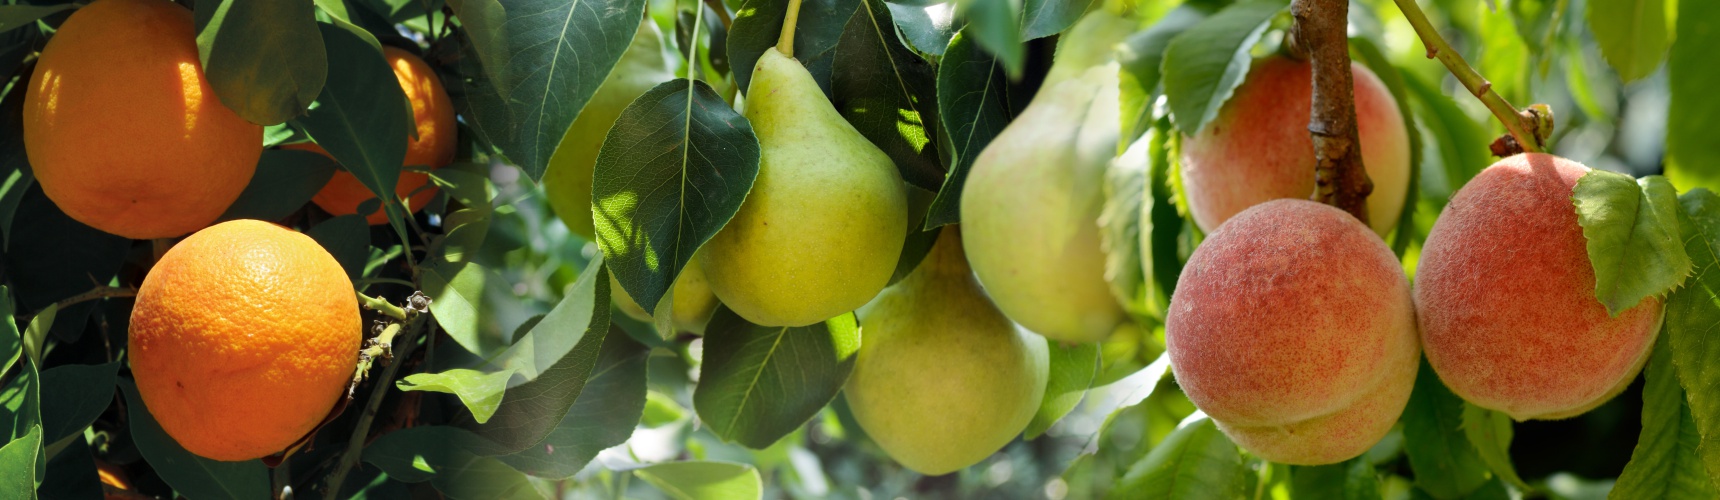 frutos a los que afecta la mosca de la fruta: pera, melocotón y manzana